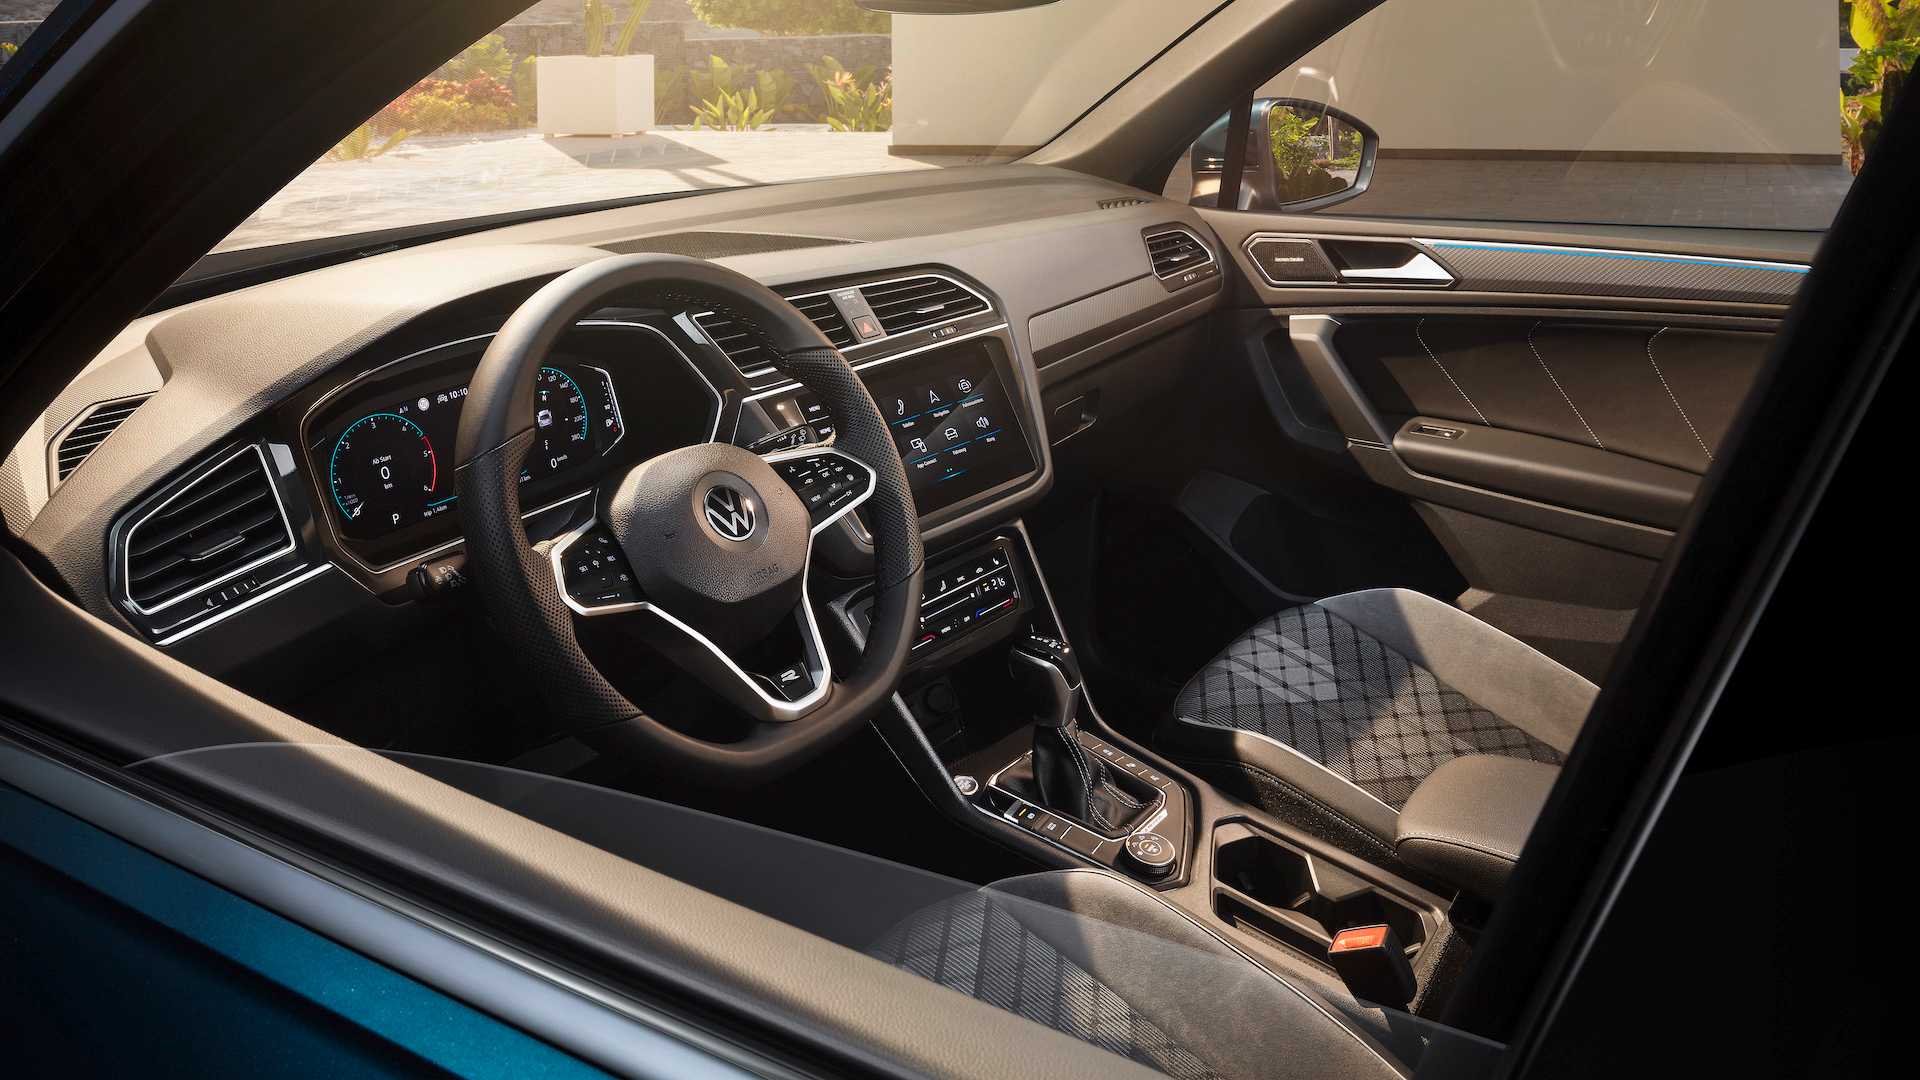 New 2021 Volkswagen Tiguan Allspace - Facelift